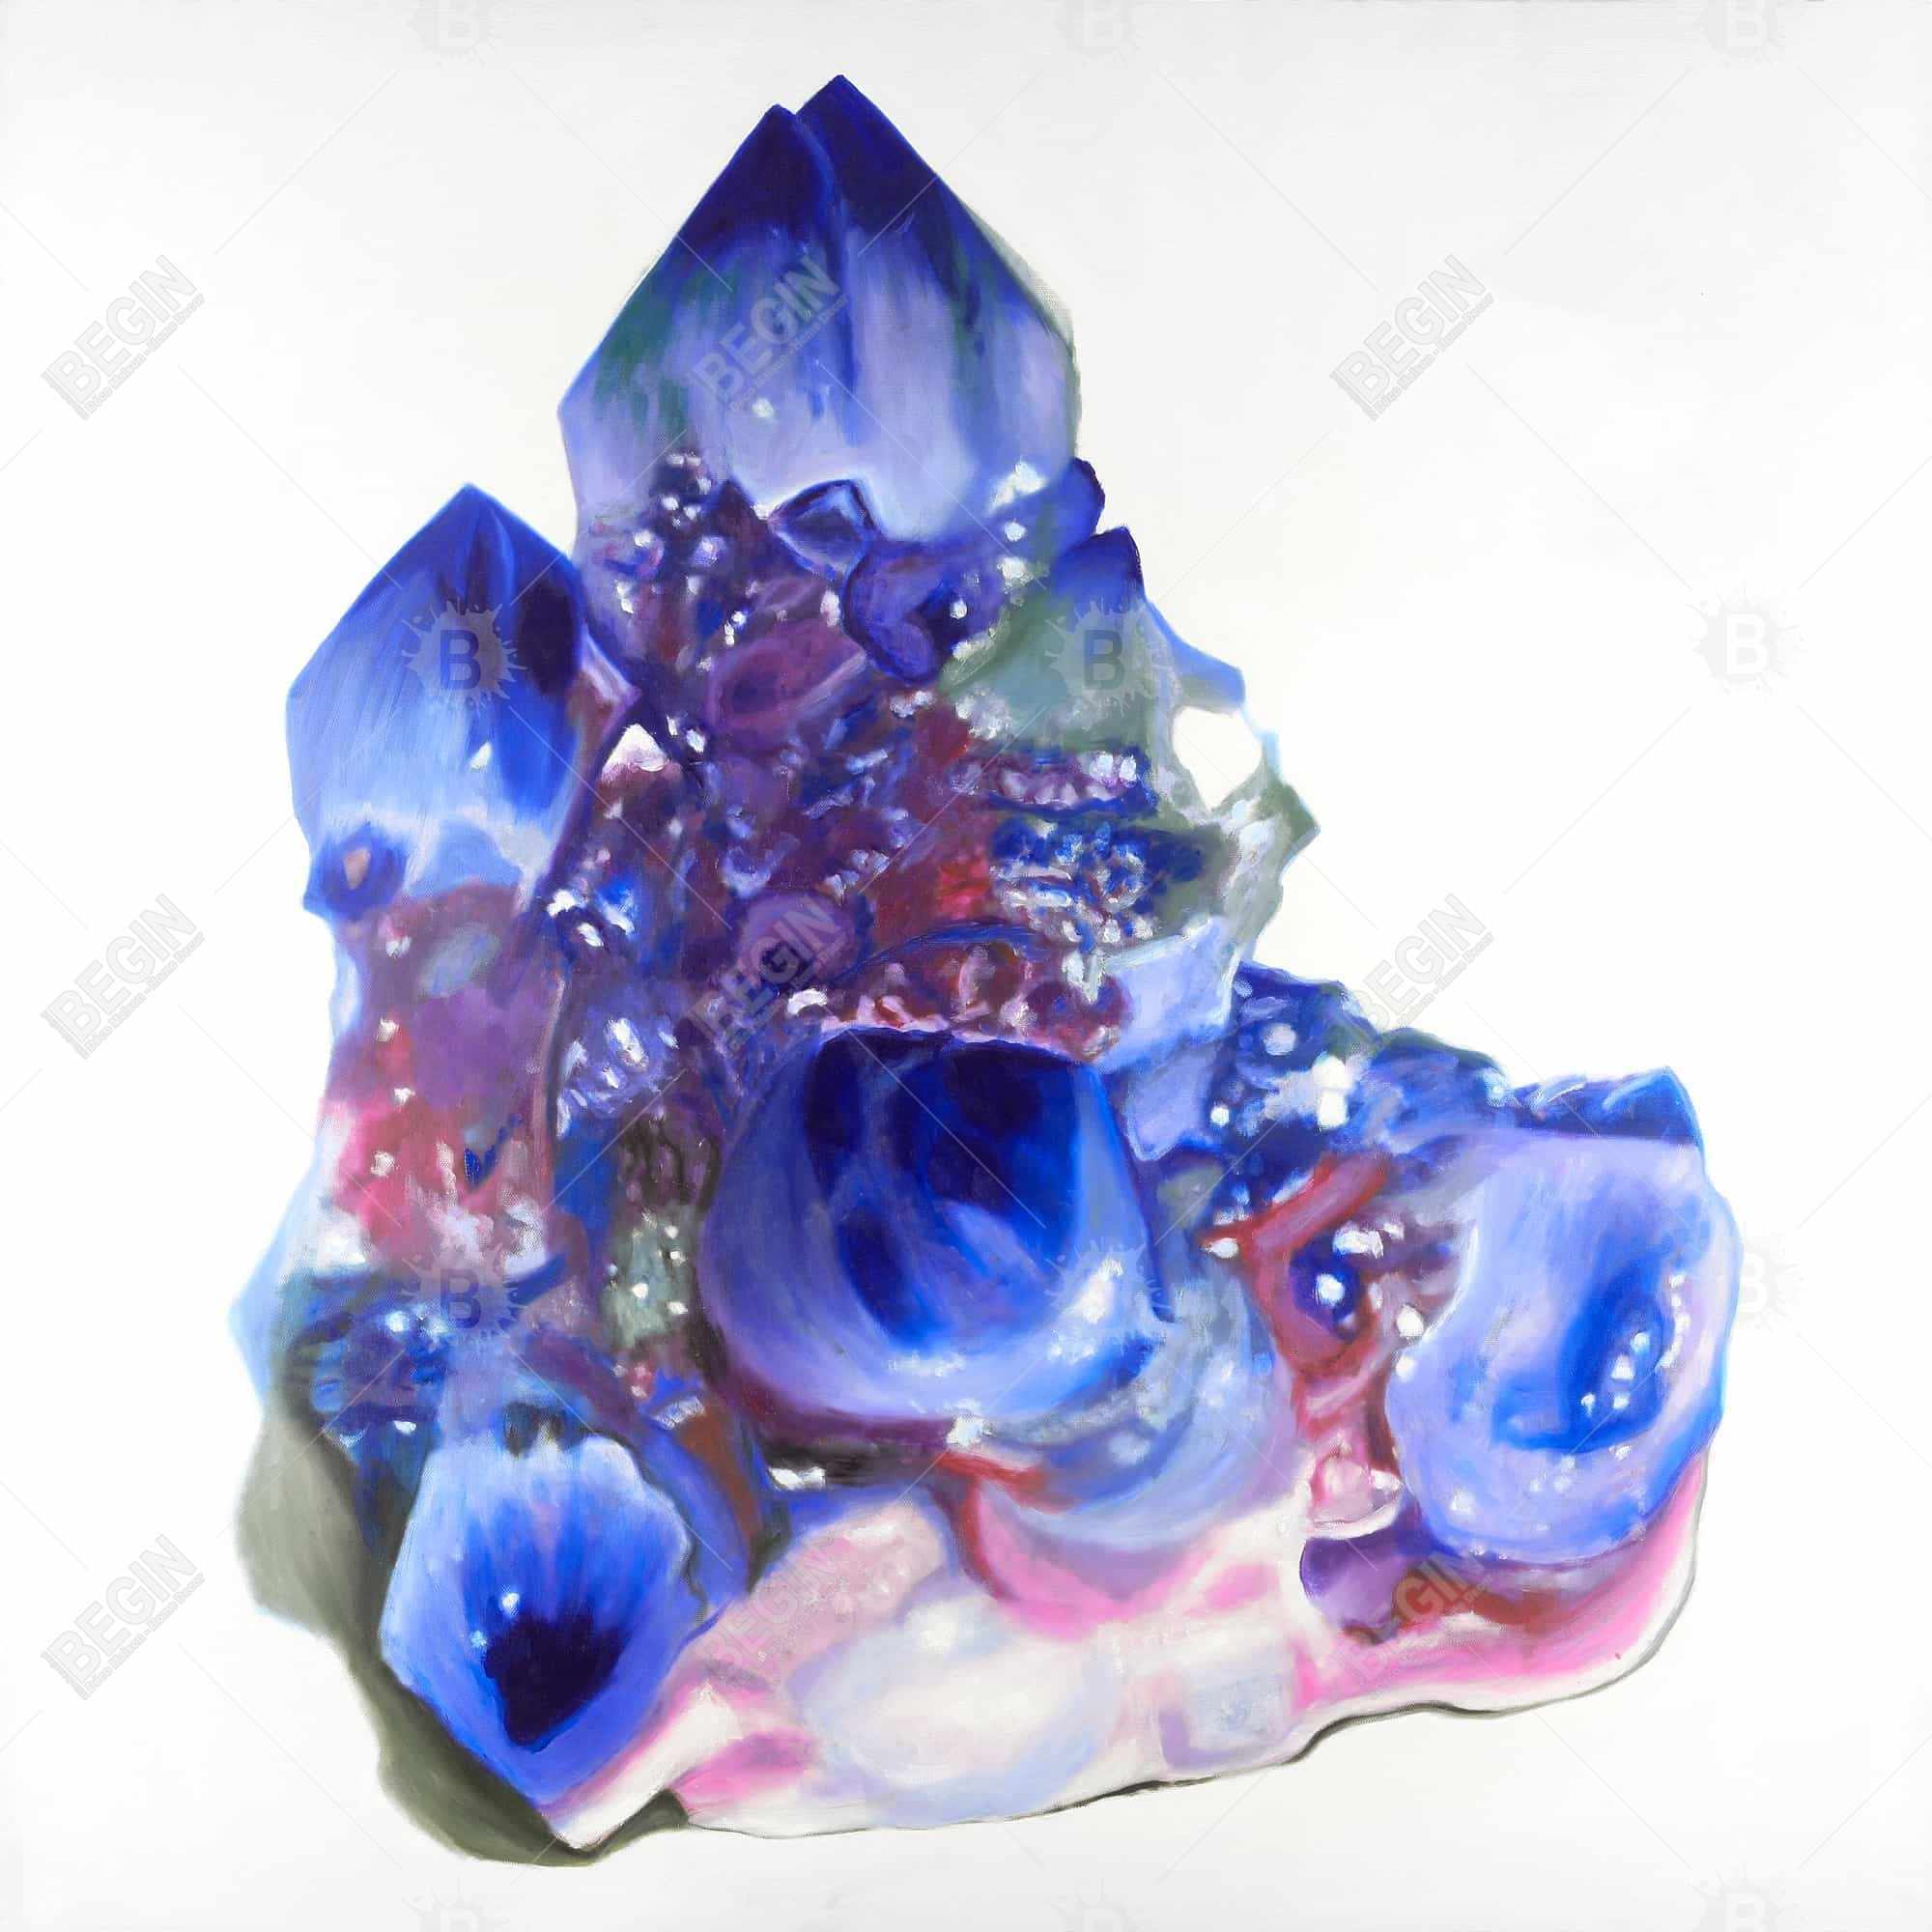 Blue and purple quartz cristal